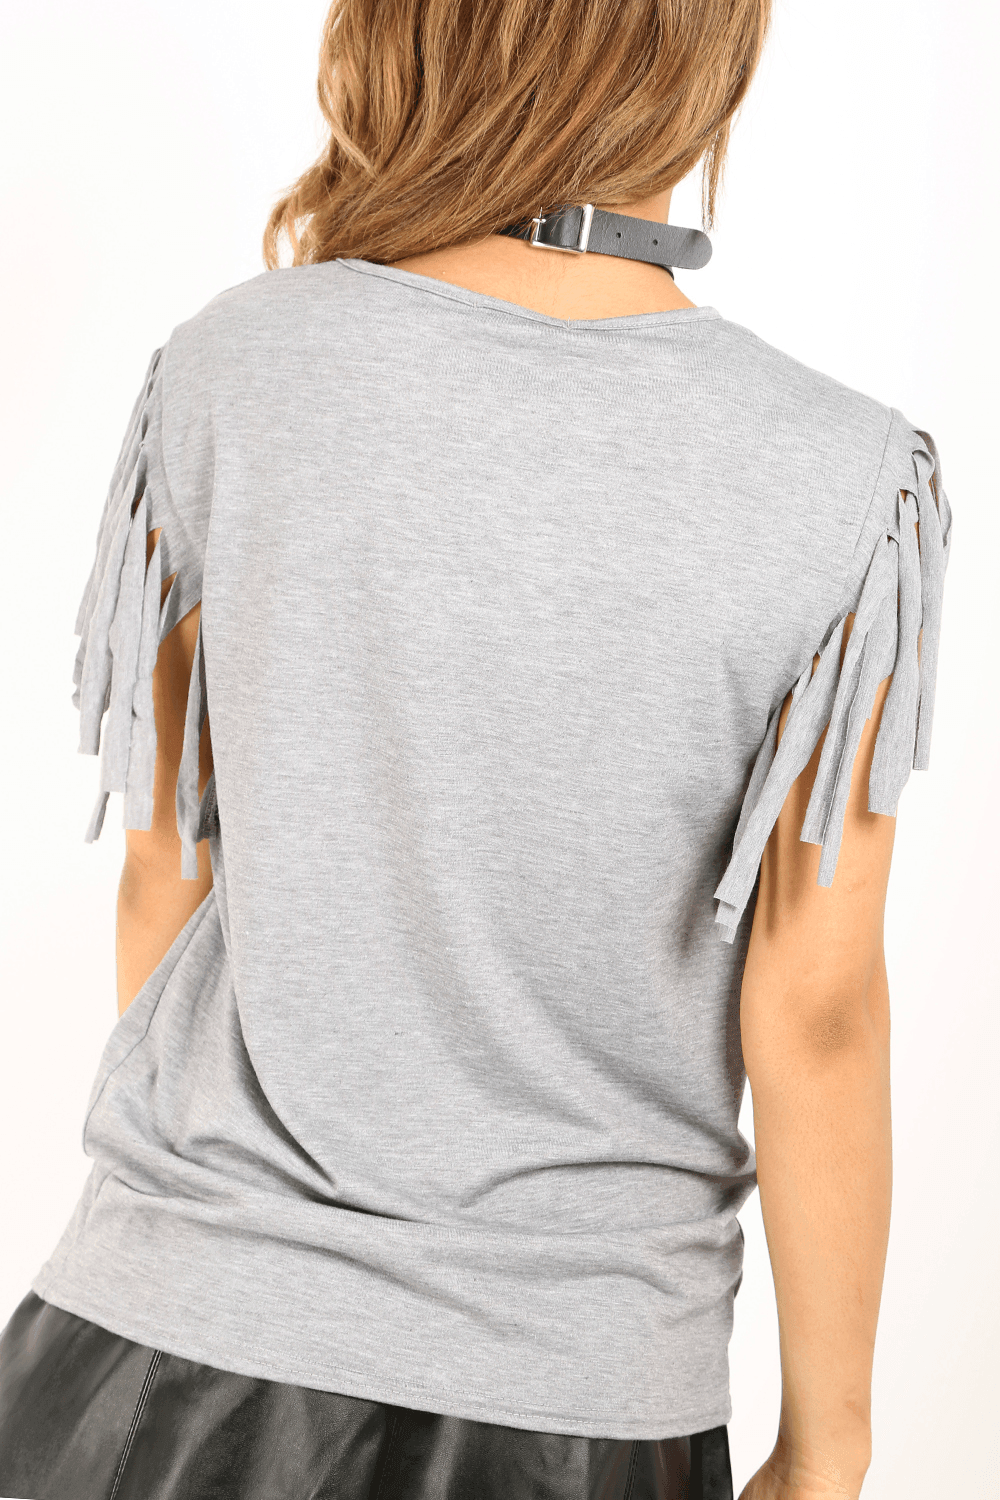 Khaki Fringe Sleeve Oversized Basic Tshirt - bejealous-com